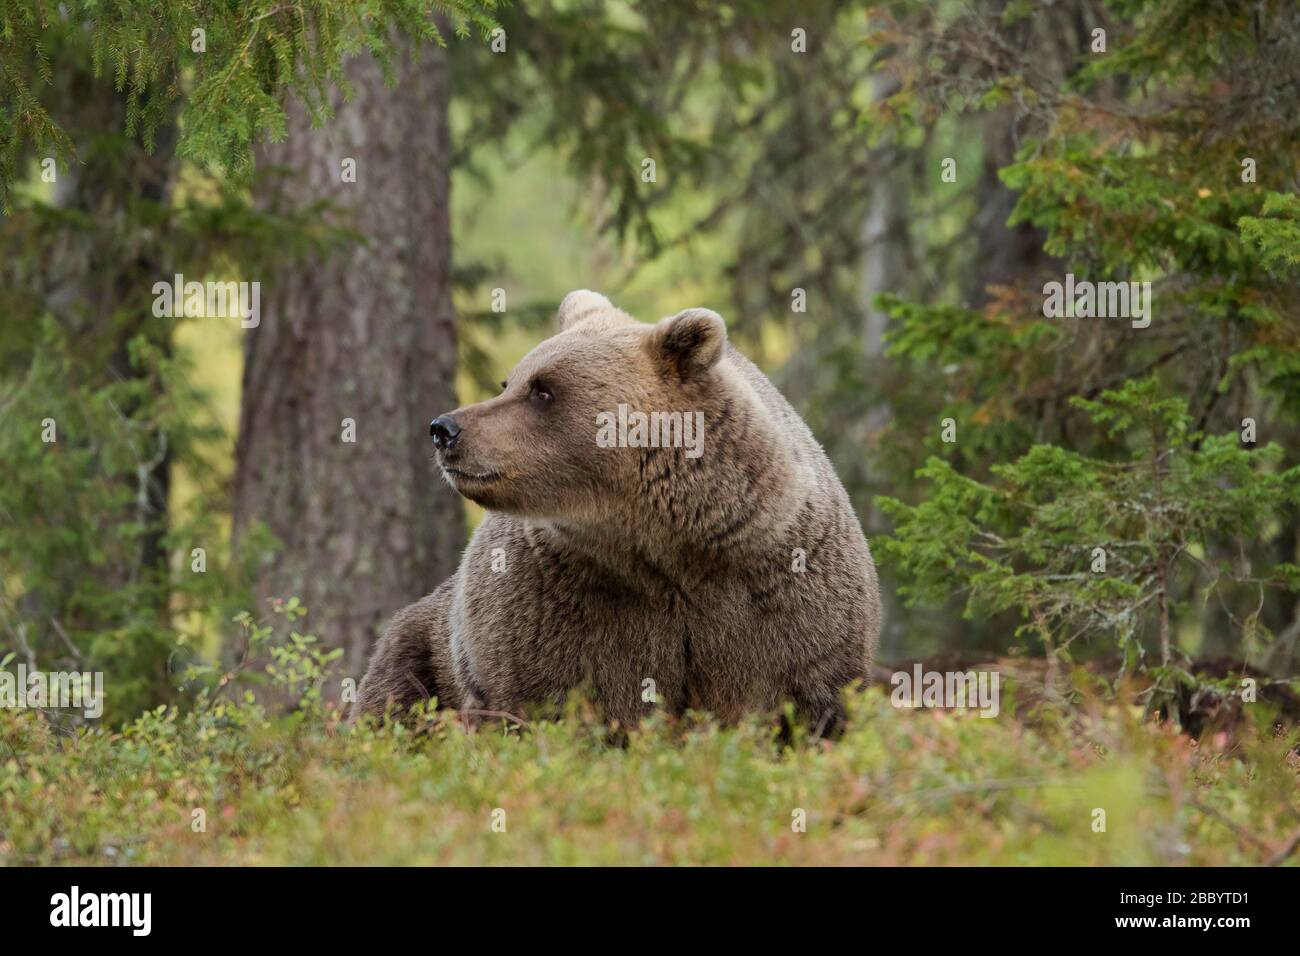 Braunbär (Ursus arctos), im Wald sitzendes altes Tier, Kainuu, Karelia, Finnland Stockfoto